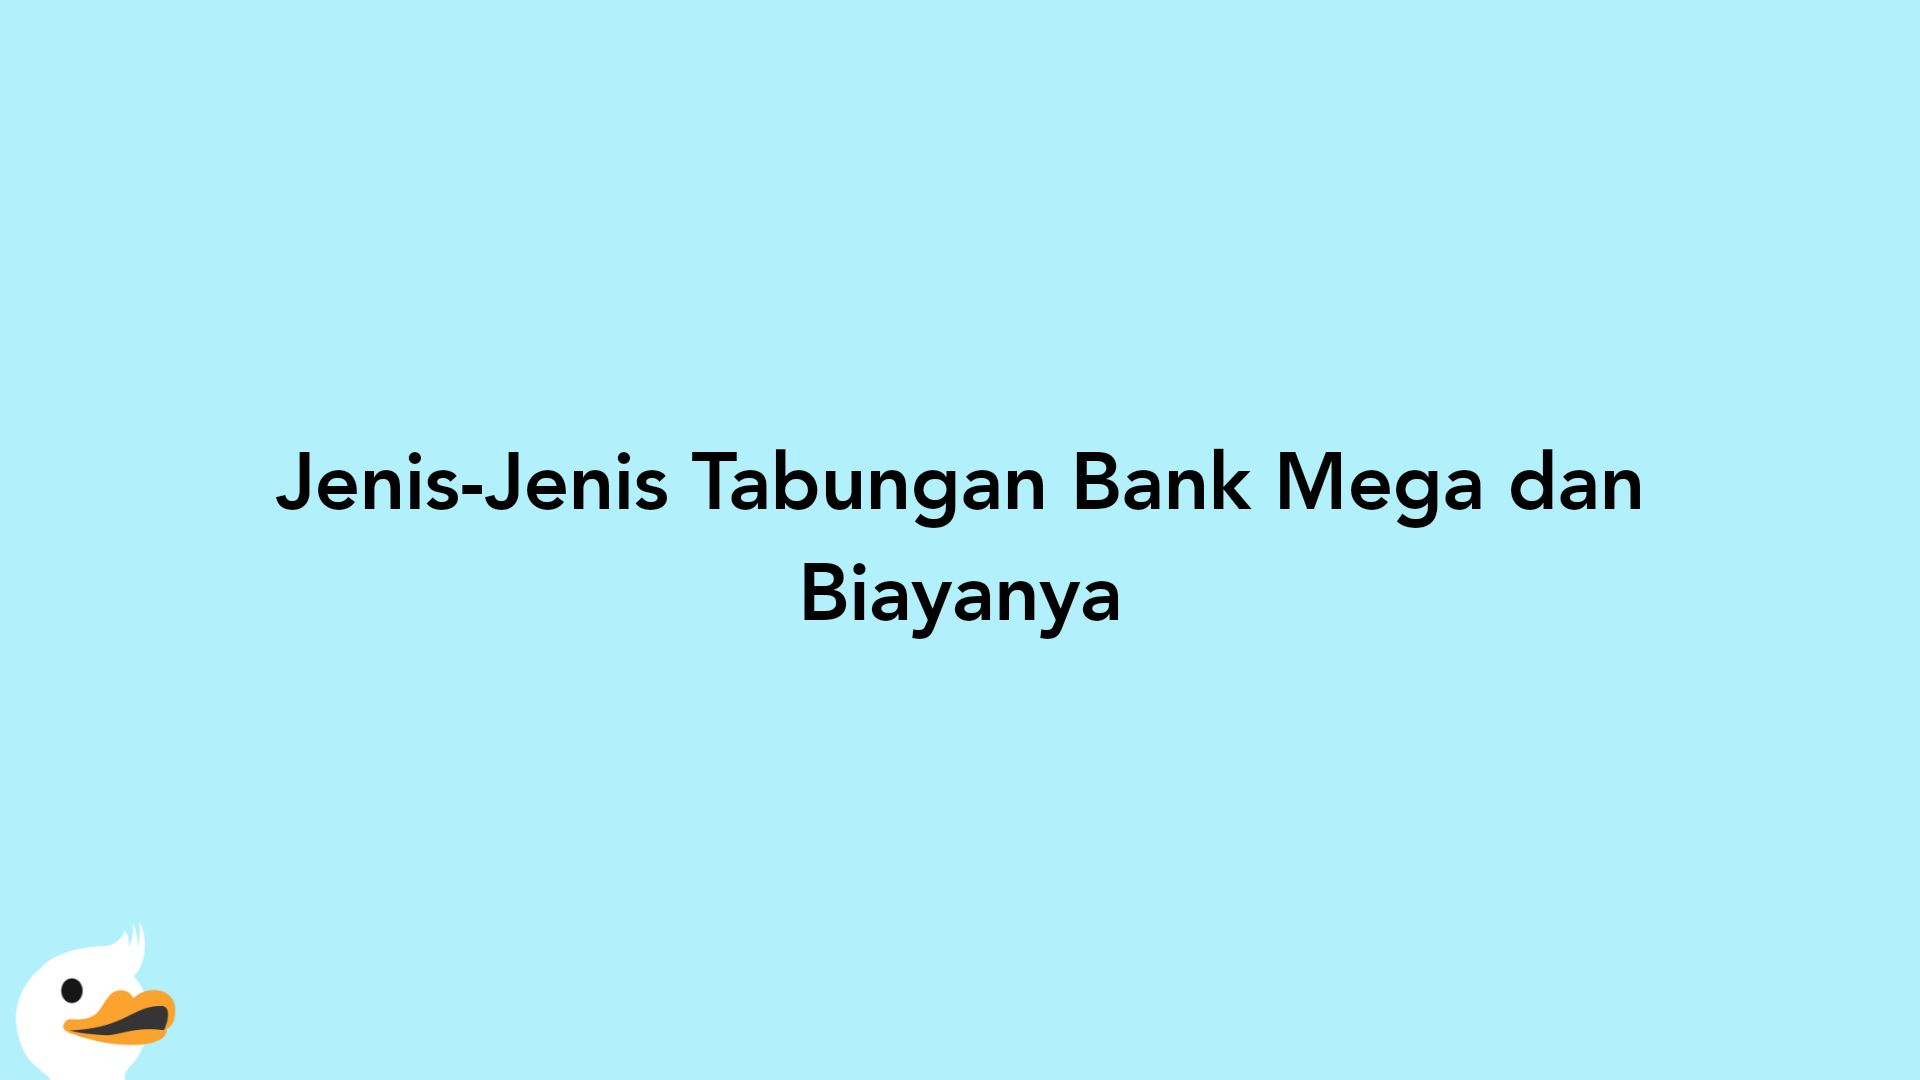 Jenis-Jenis Tabungan Bank Mega dan Biayanya